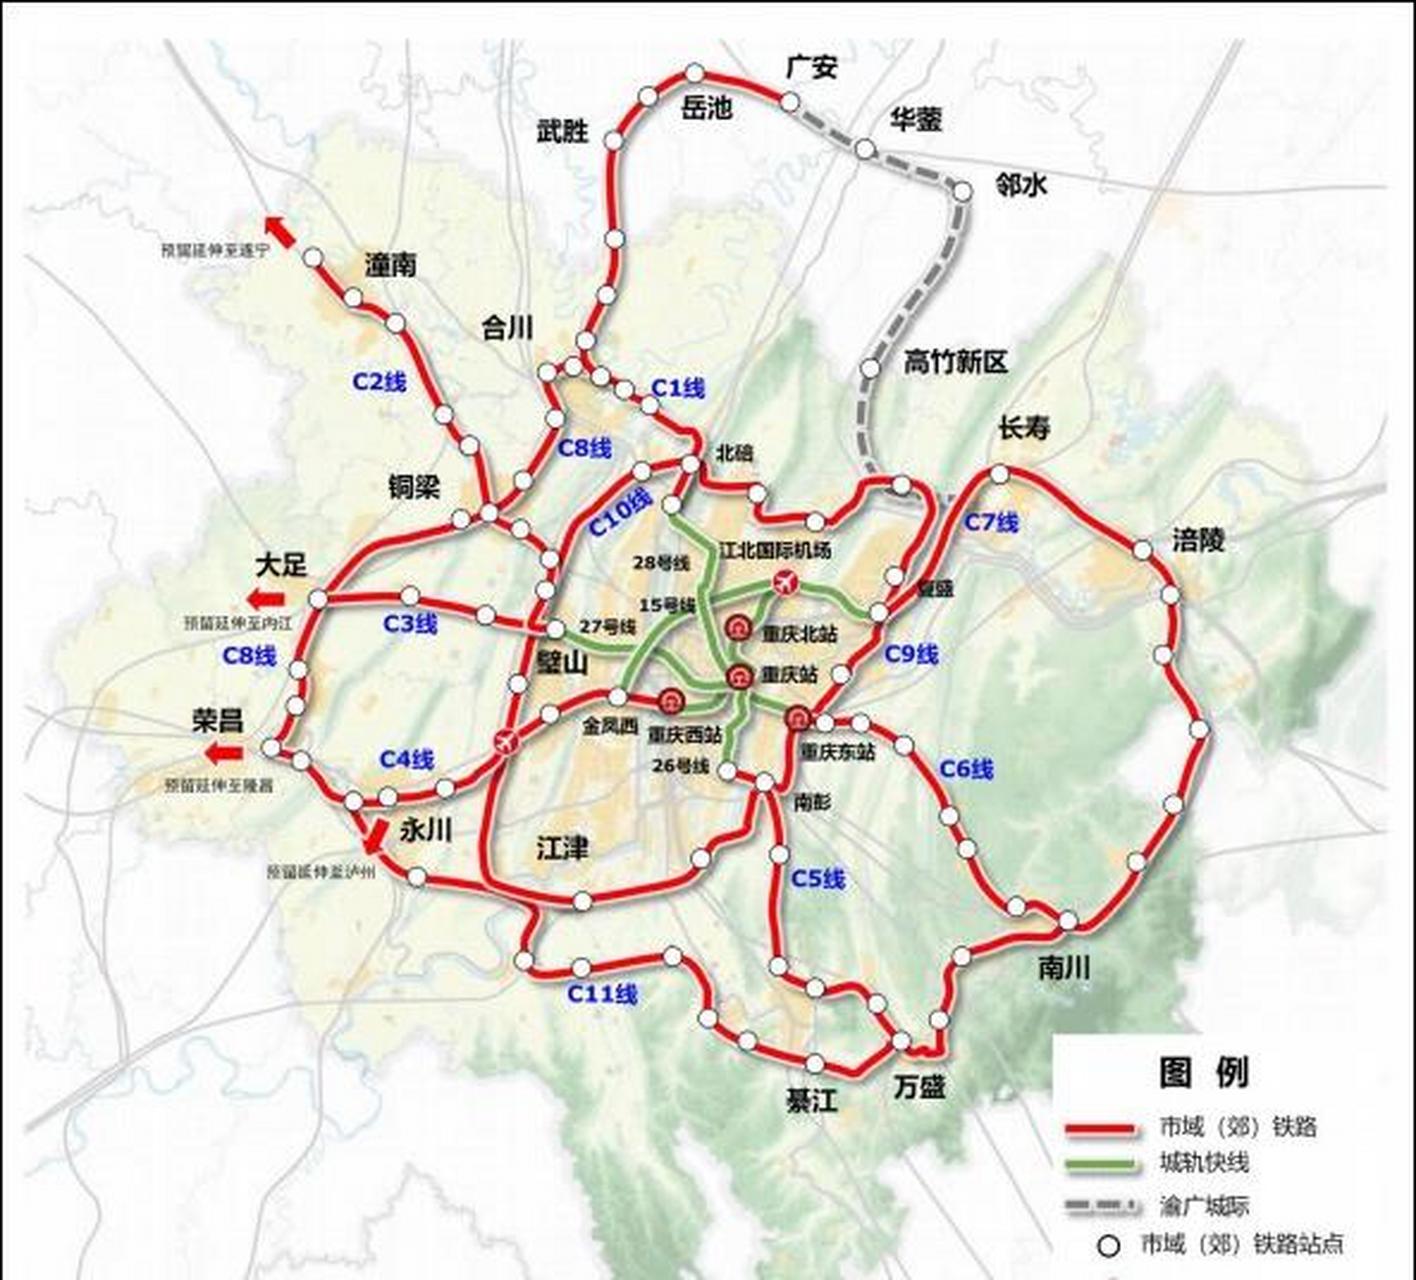 重庆市域(郊)铁路网规划构建七射线两环线市域(郊)铁路网,规划建设